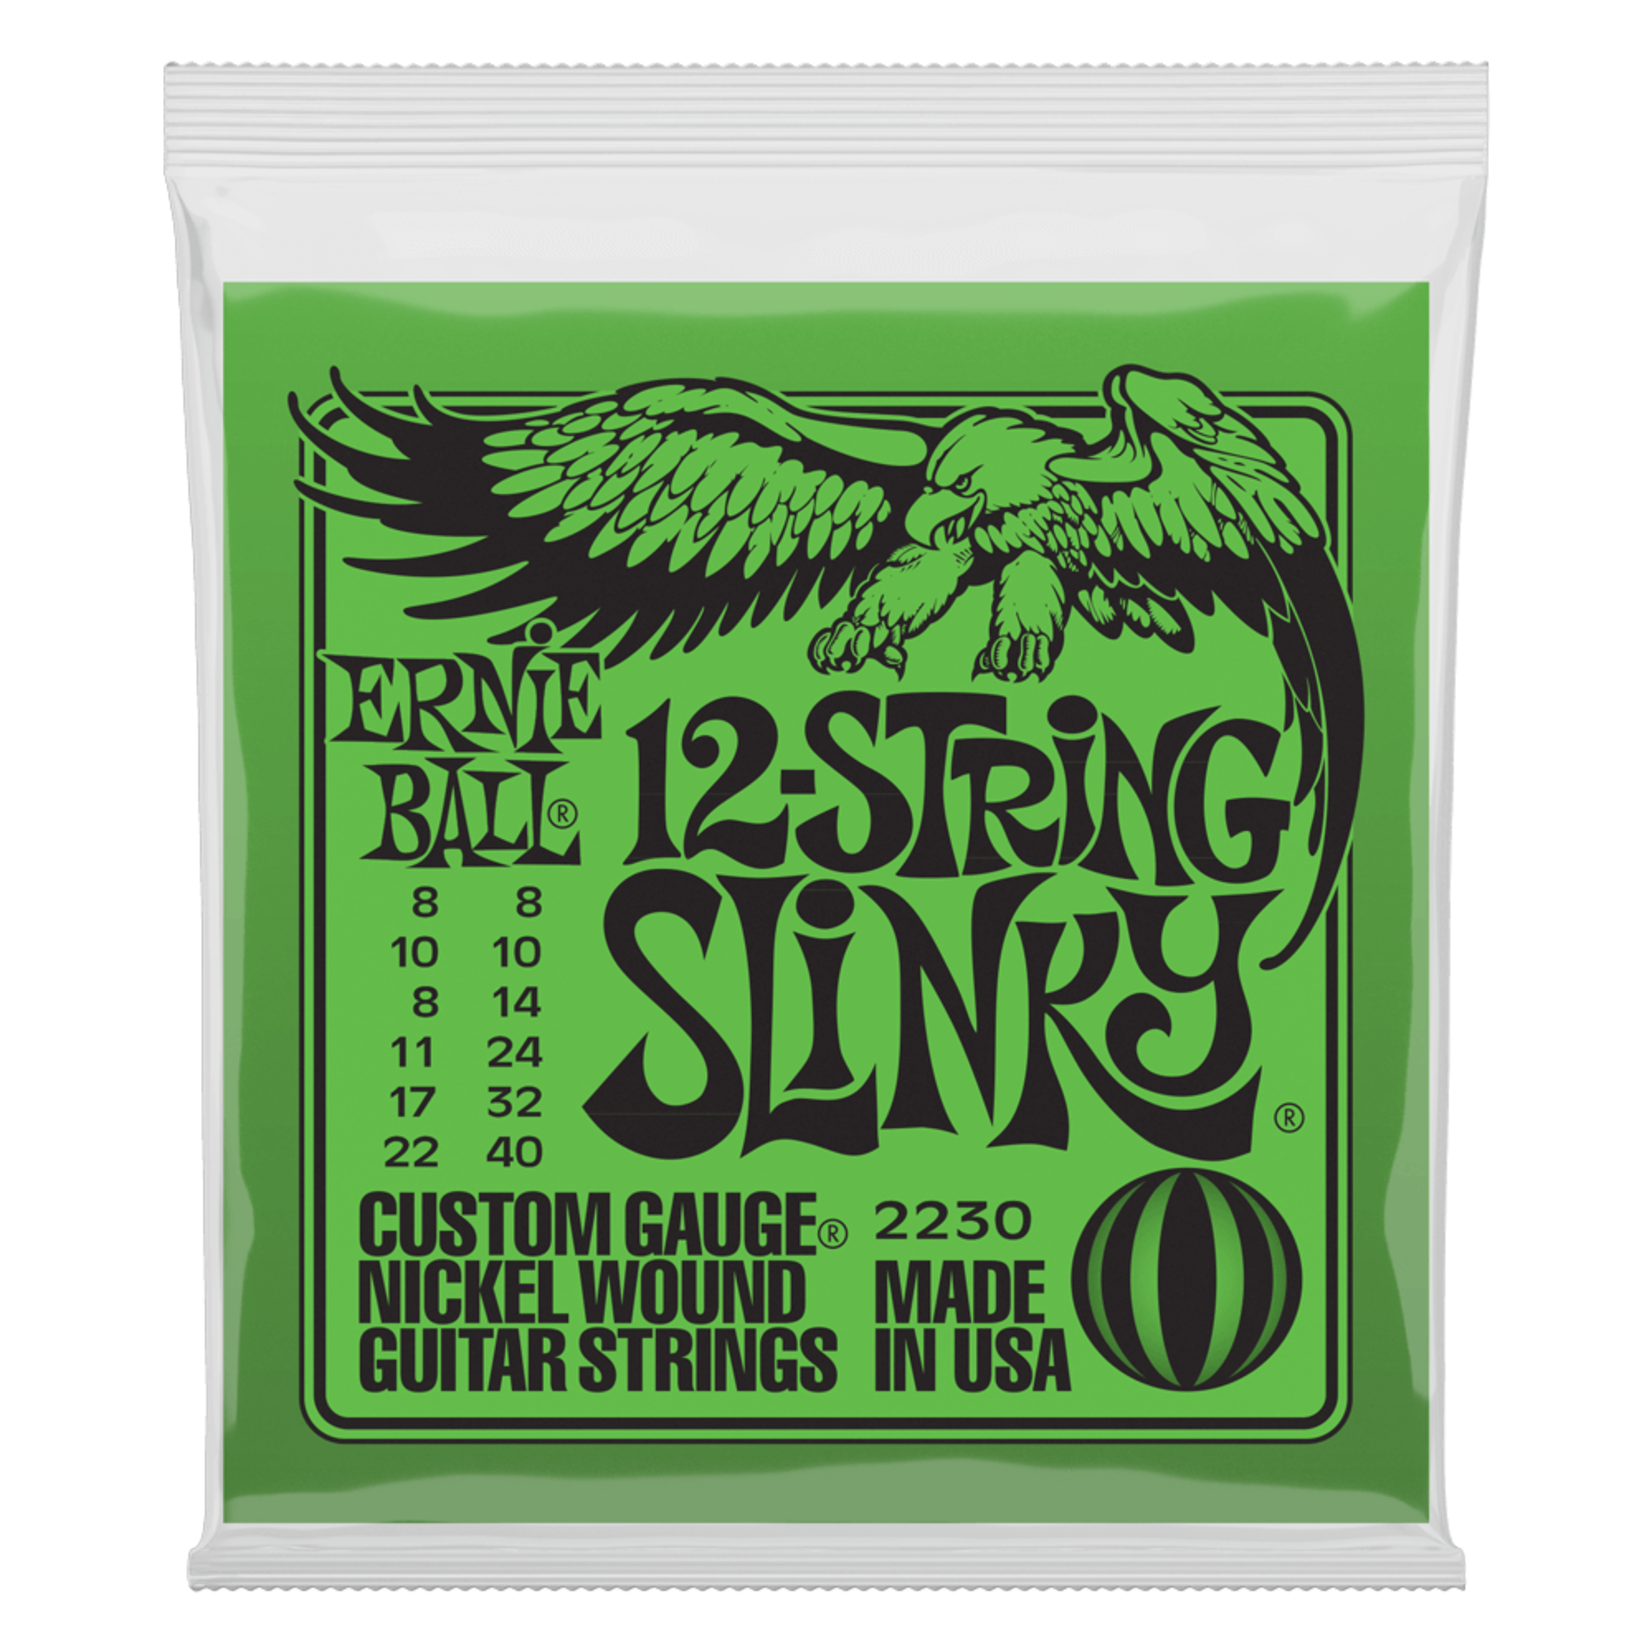 Ernie Ball Slinky Nickel Wound 12-String Electric Guitar Strings 8-40 Gauge